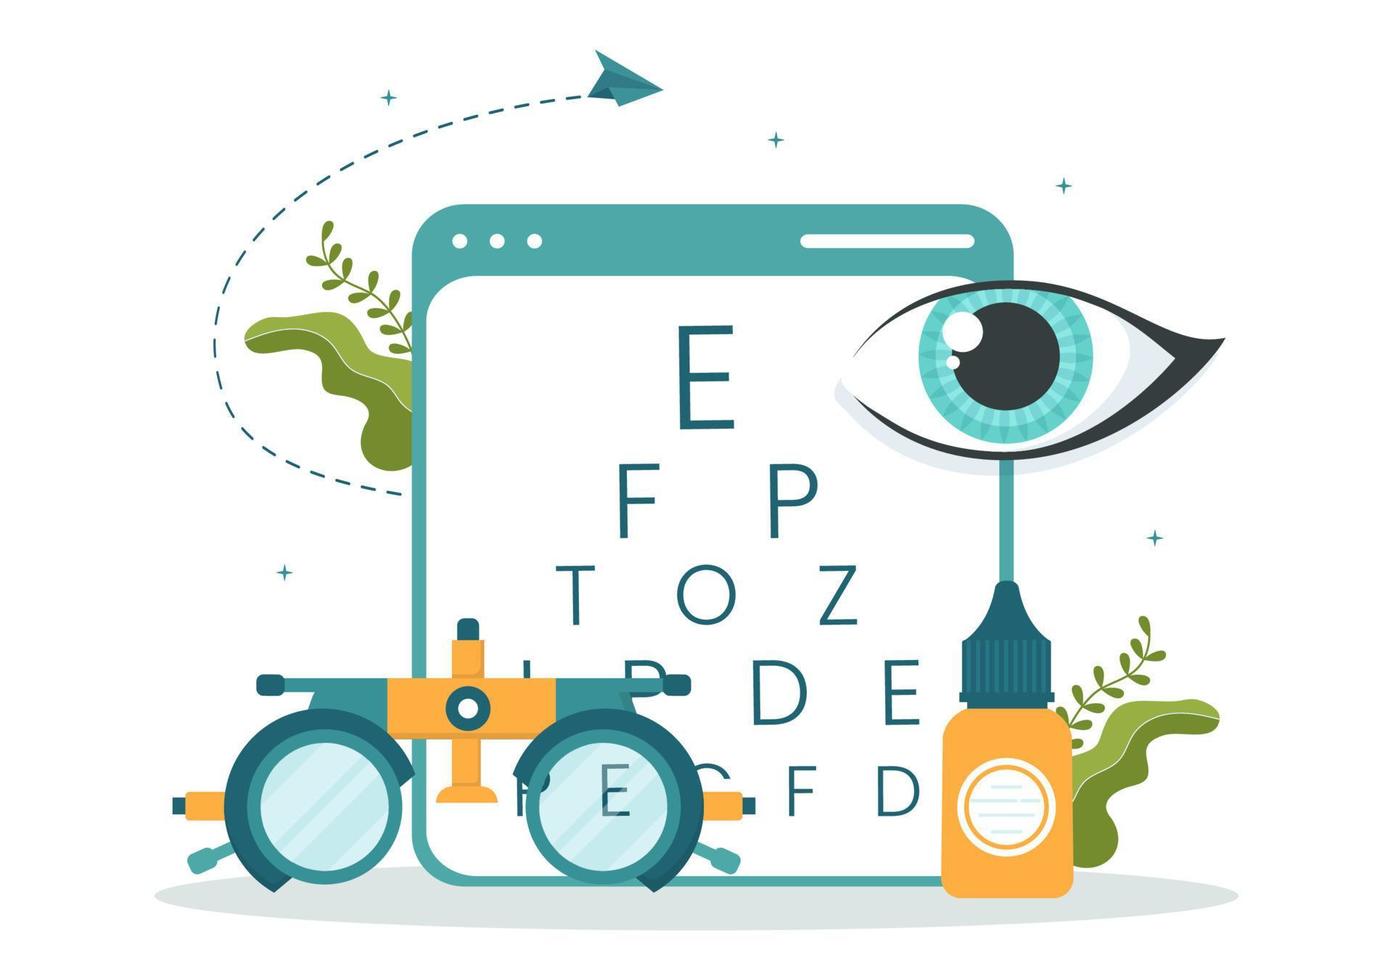 optometrista con oftalmólogo revisa la vista del paciente, la prueba ocular óptica y la tecnología de anteojos en dibujos animados planos dibujados a mano ilustración de plantillas vector